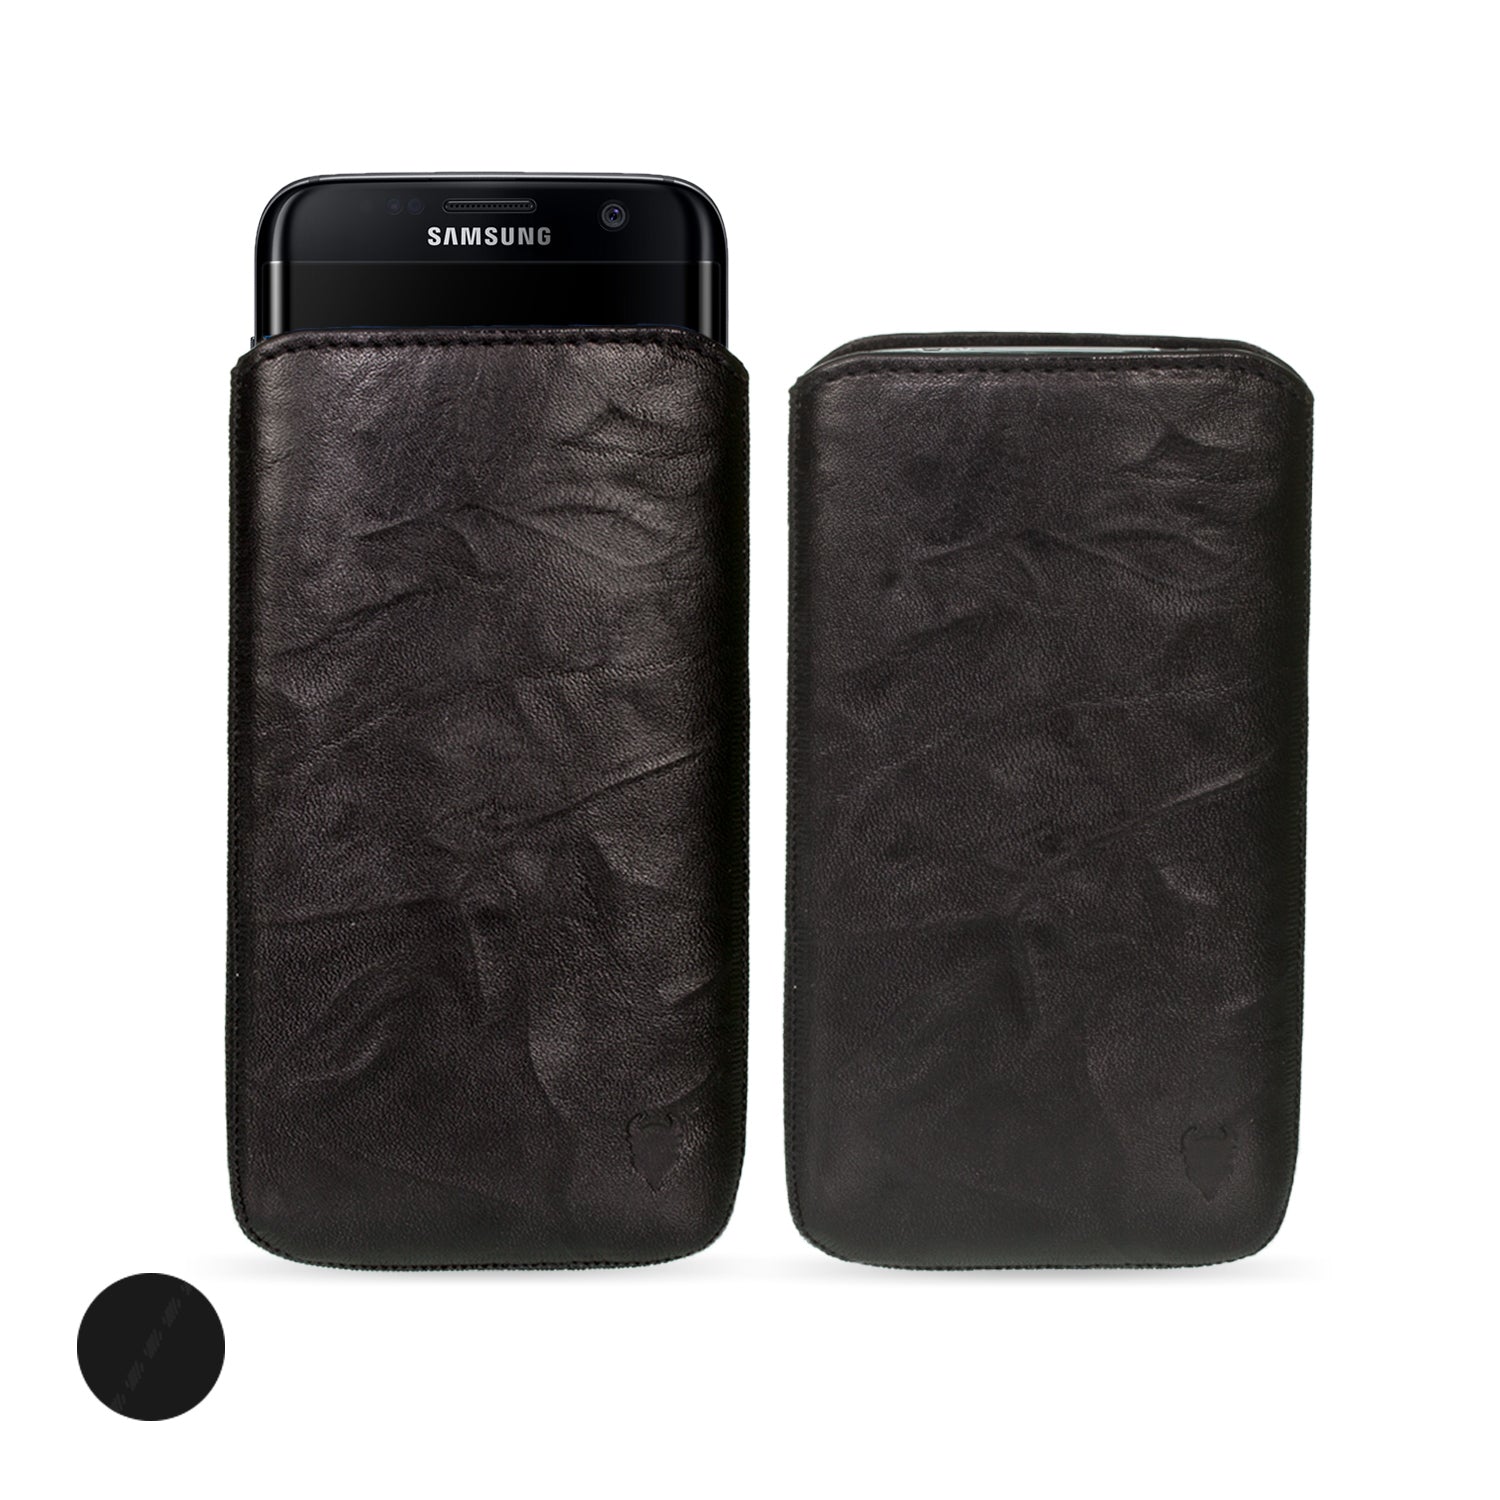 Graphene 3 Samsung S10 Case